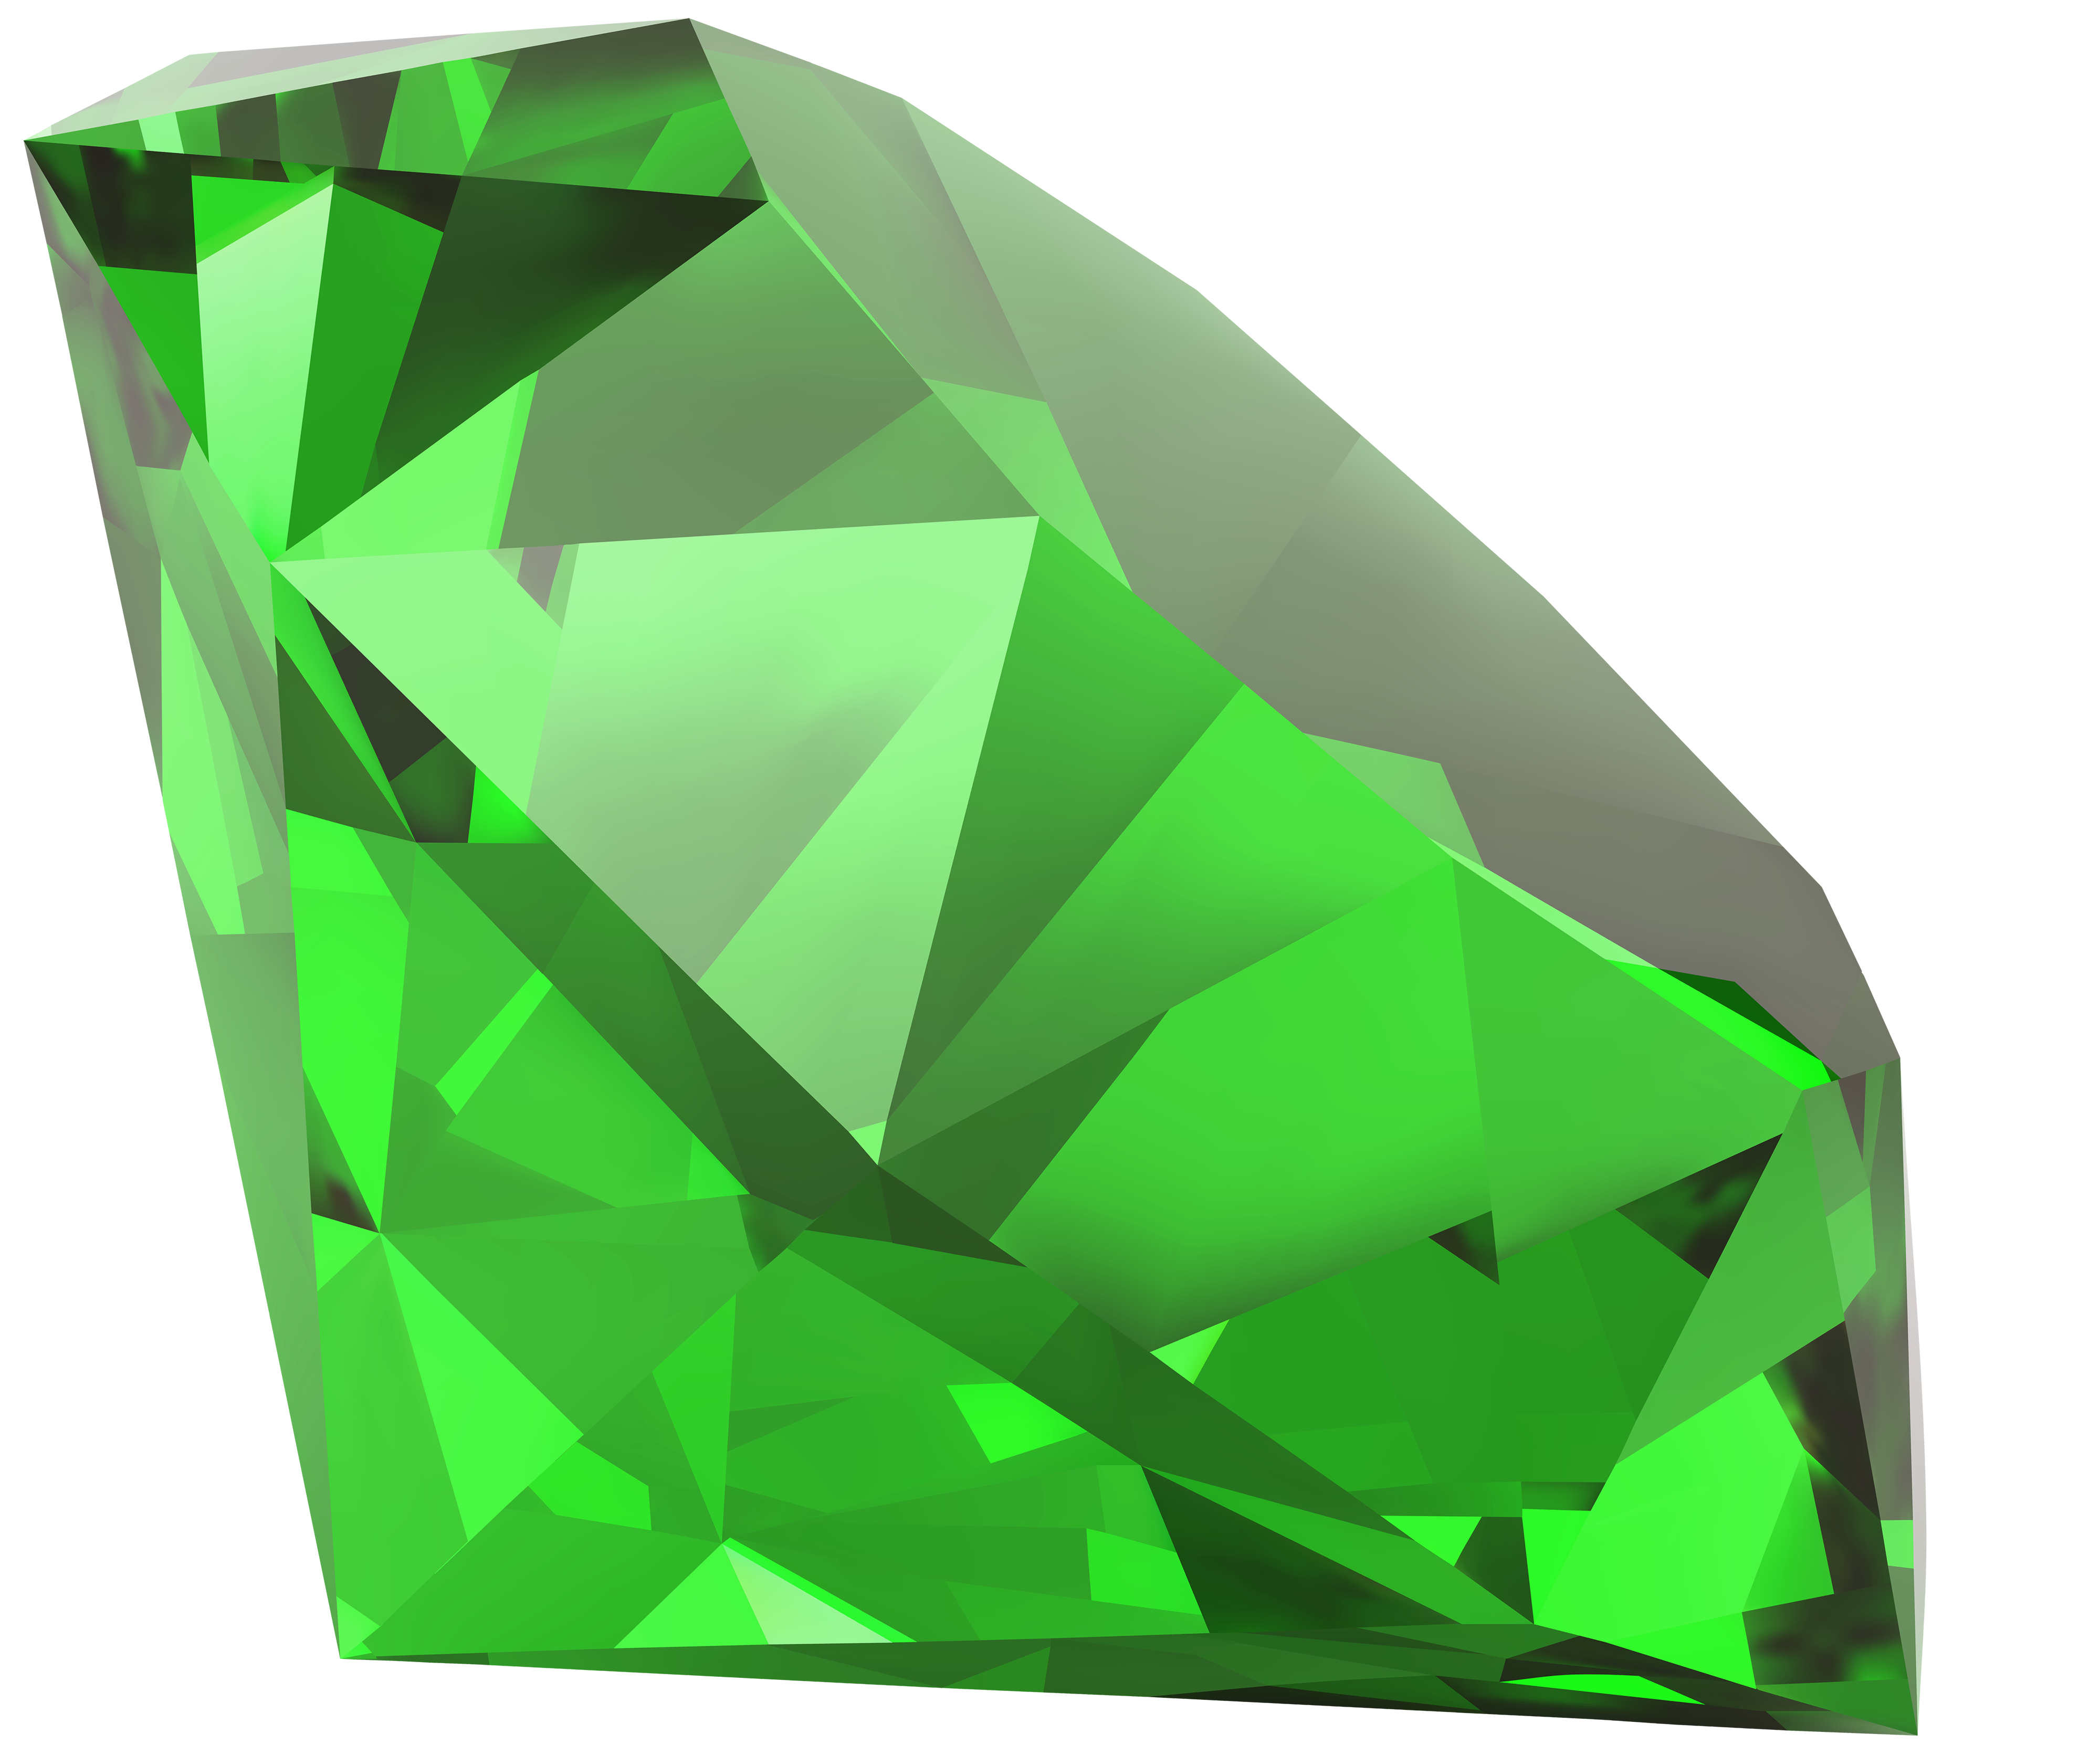 Smeraldo